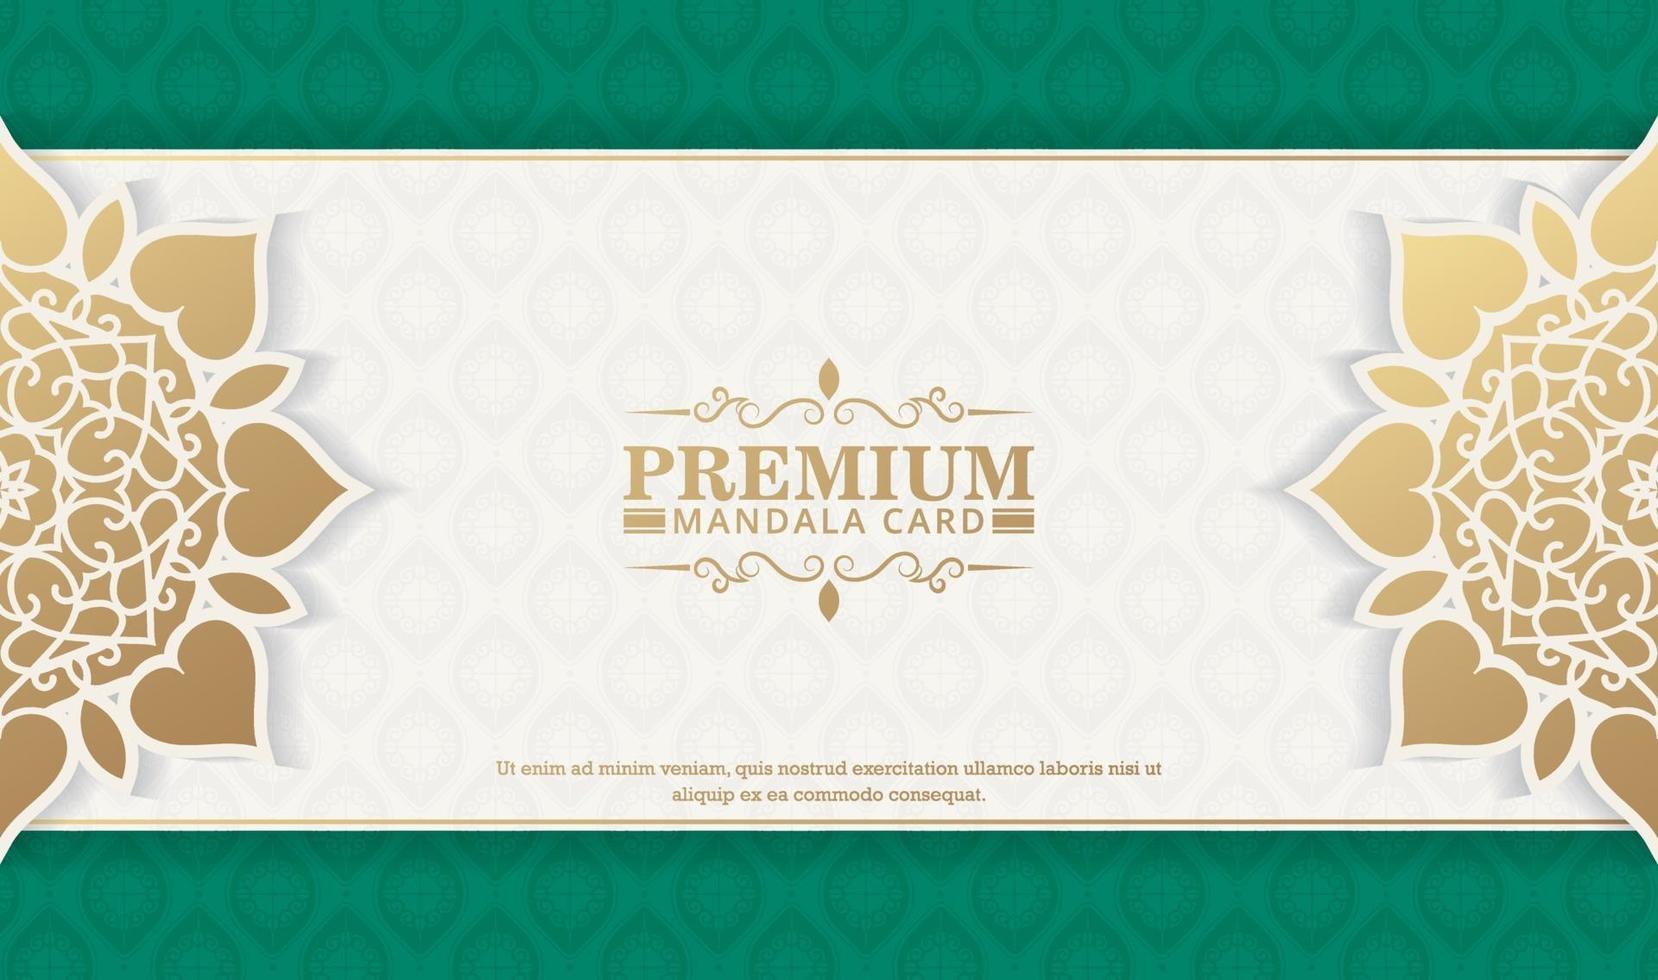 luxe sier mandala achtergrond met Arabische islamitische Oost-patroon stijl premium vector